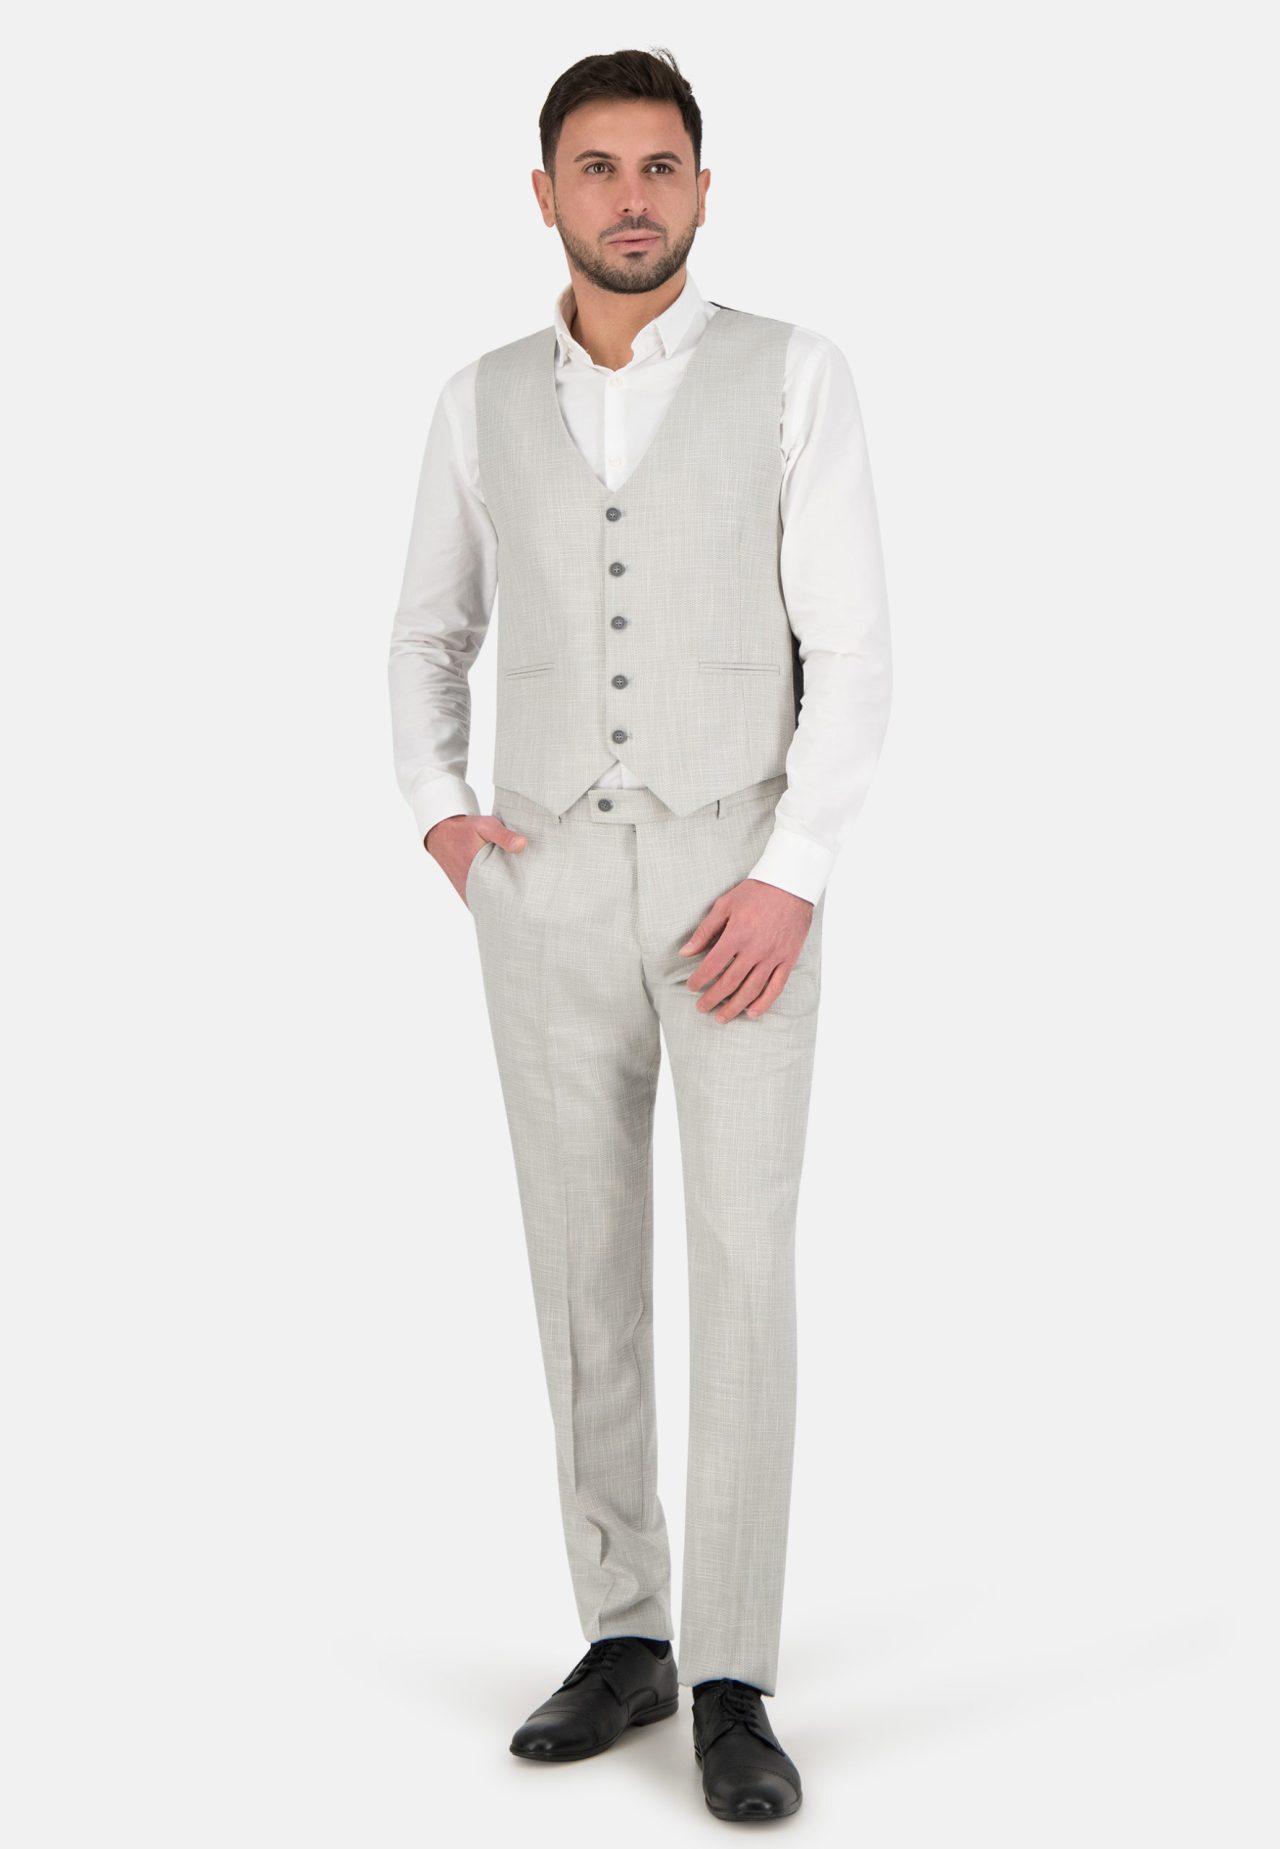 Must-have Anzüge in jedem Kleiderschrank: Eine Liste der essentiellen Anzüge, die jeder Mann besitzen sollte